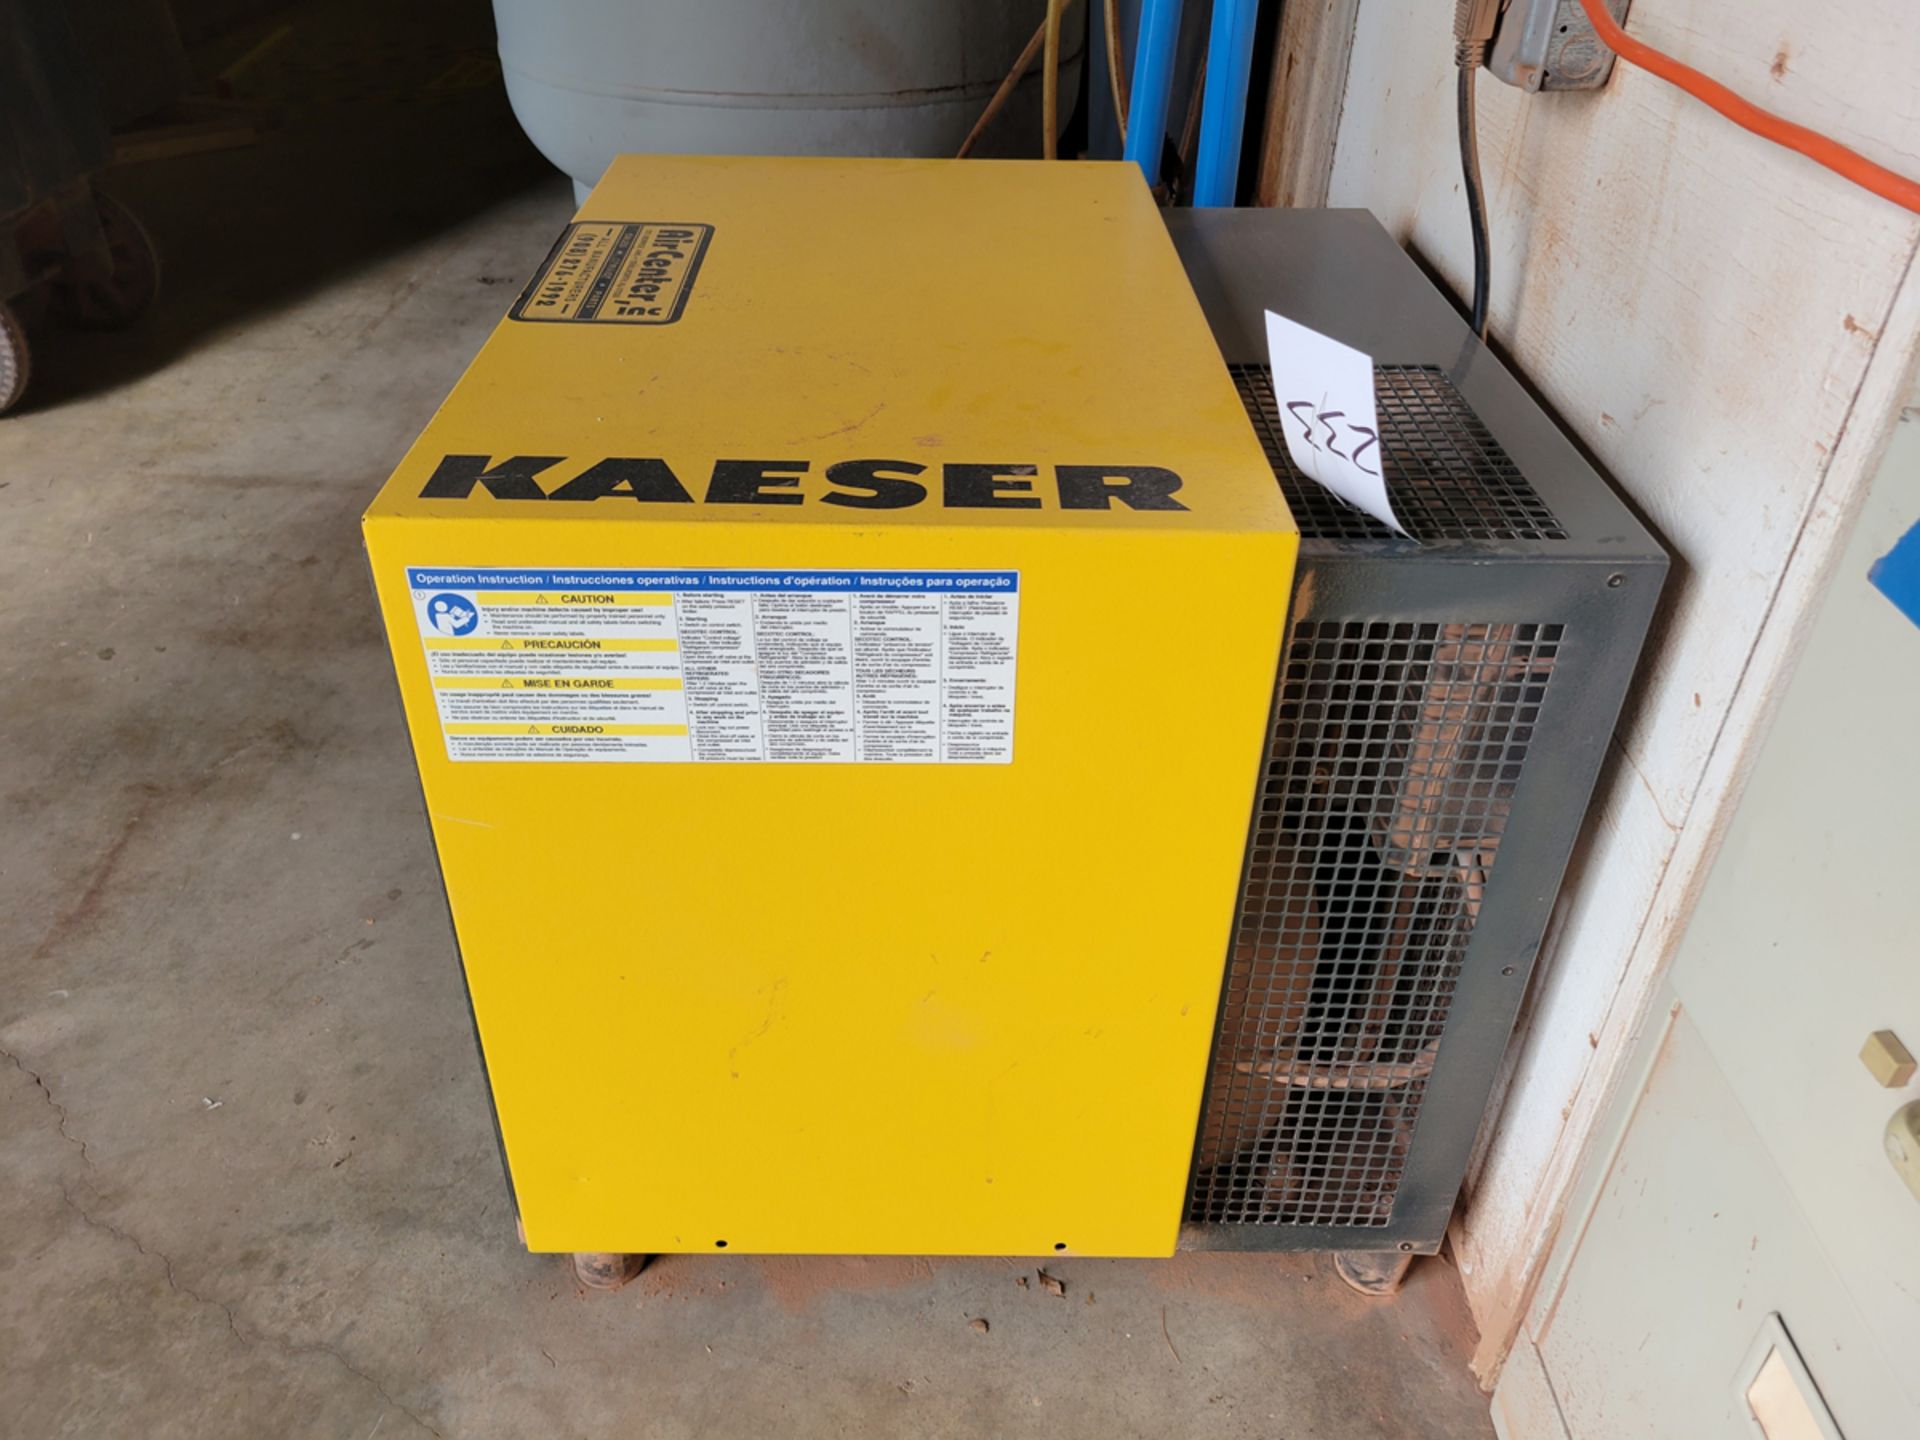 Kaeser Model:TCH 45 Kryosec Refrigeration Dryer - Image 2 of 8